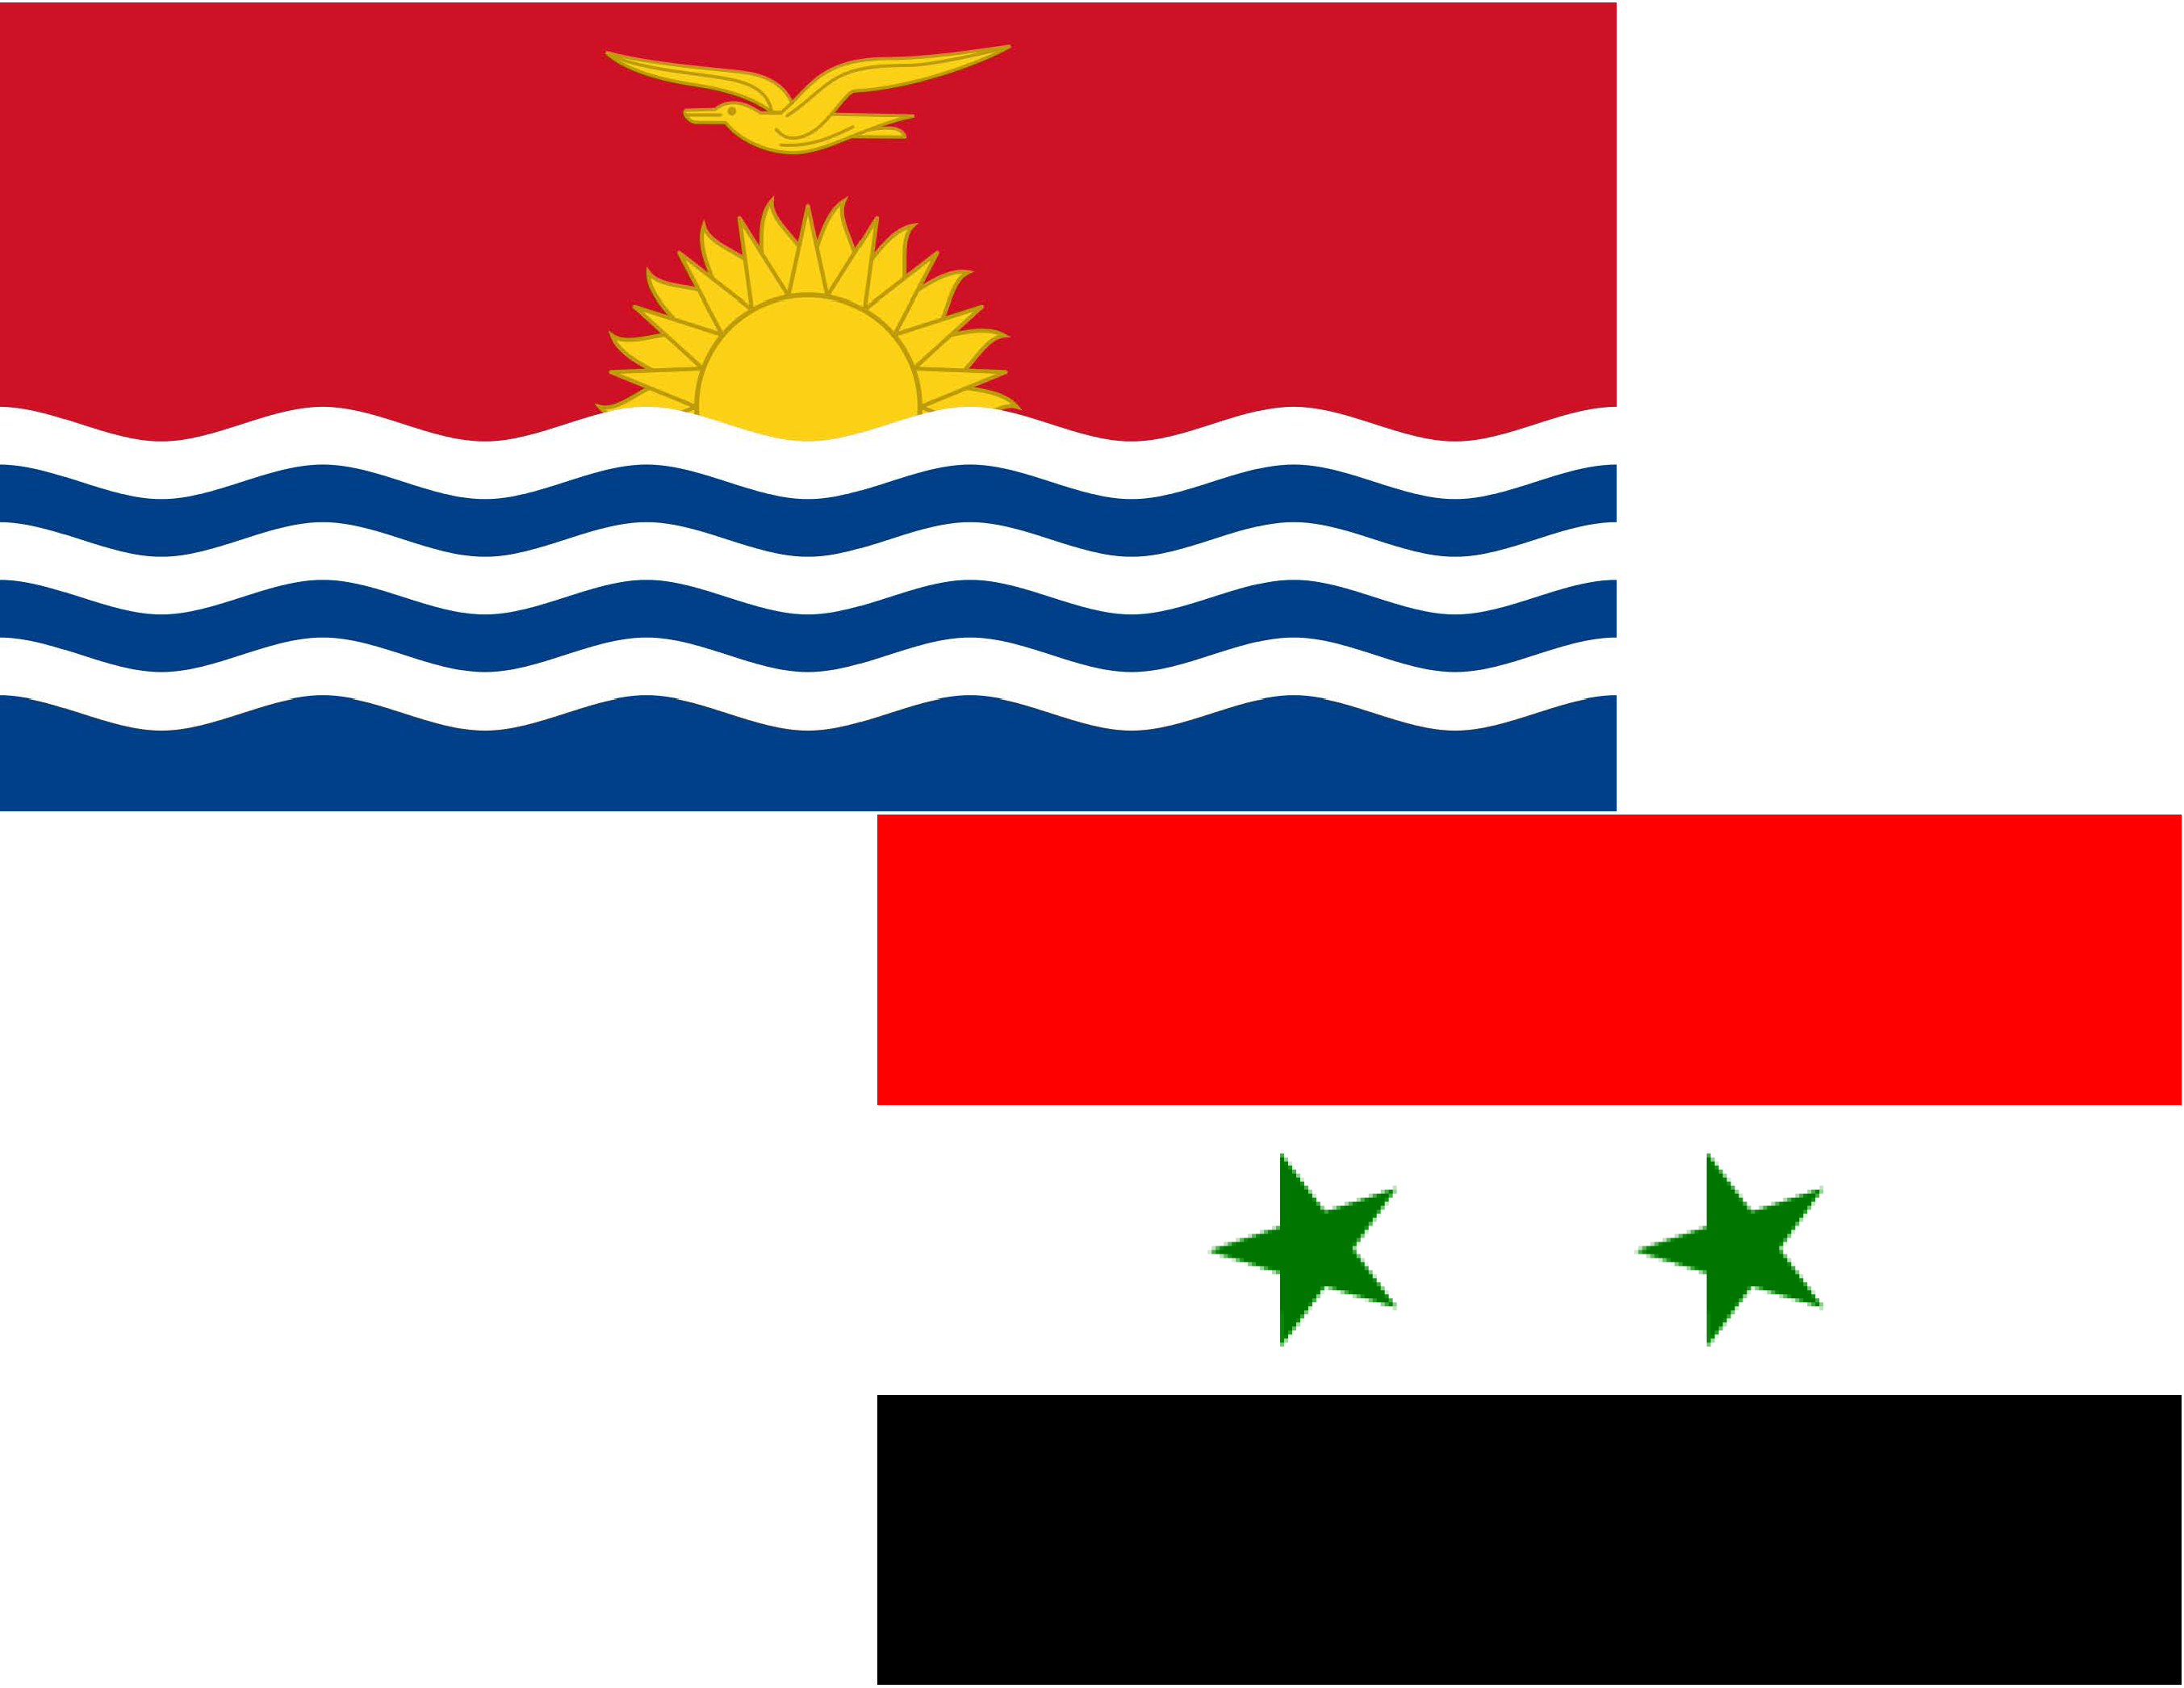 La República Árabe Siria y Kiribati futuras 72º y 73º Partes en el Convenio de Minamata